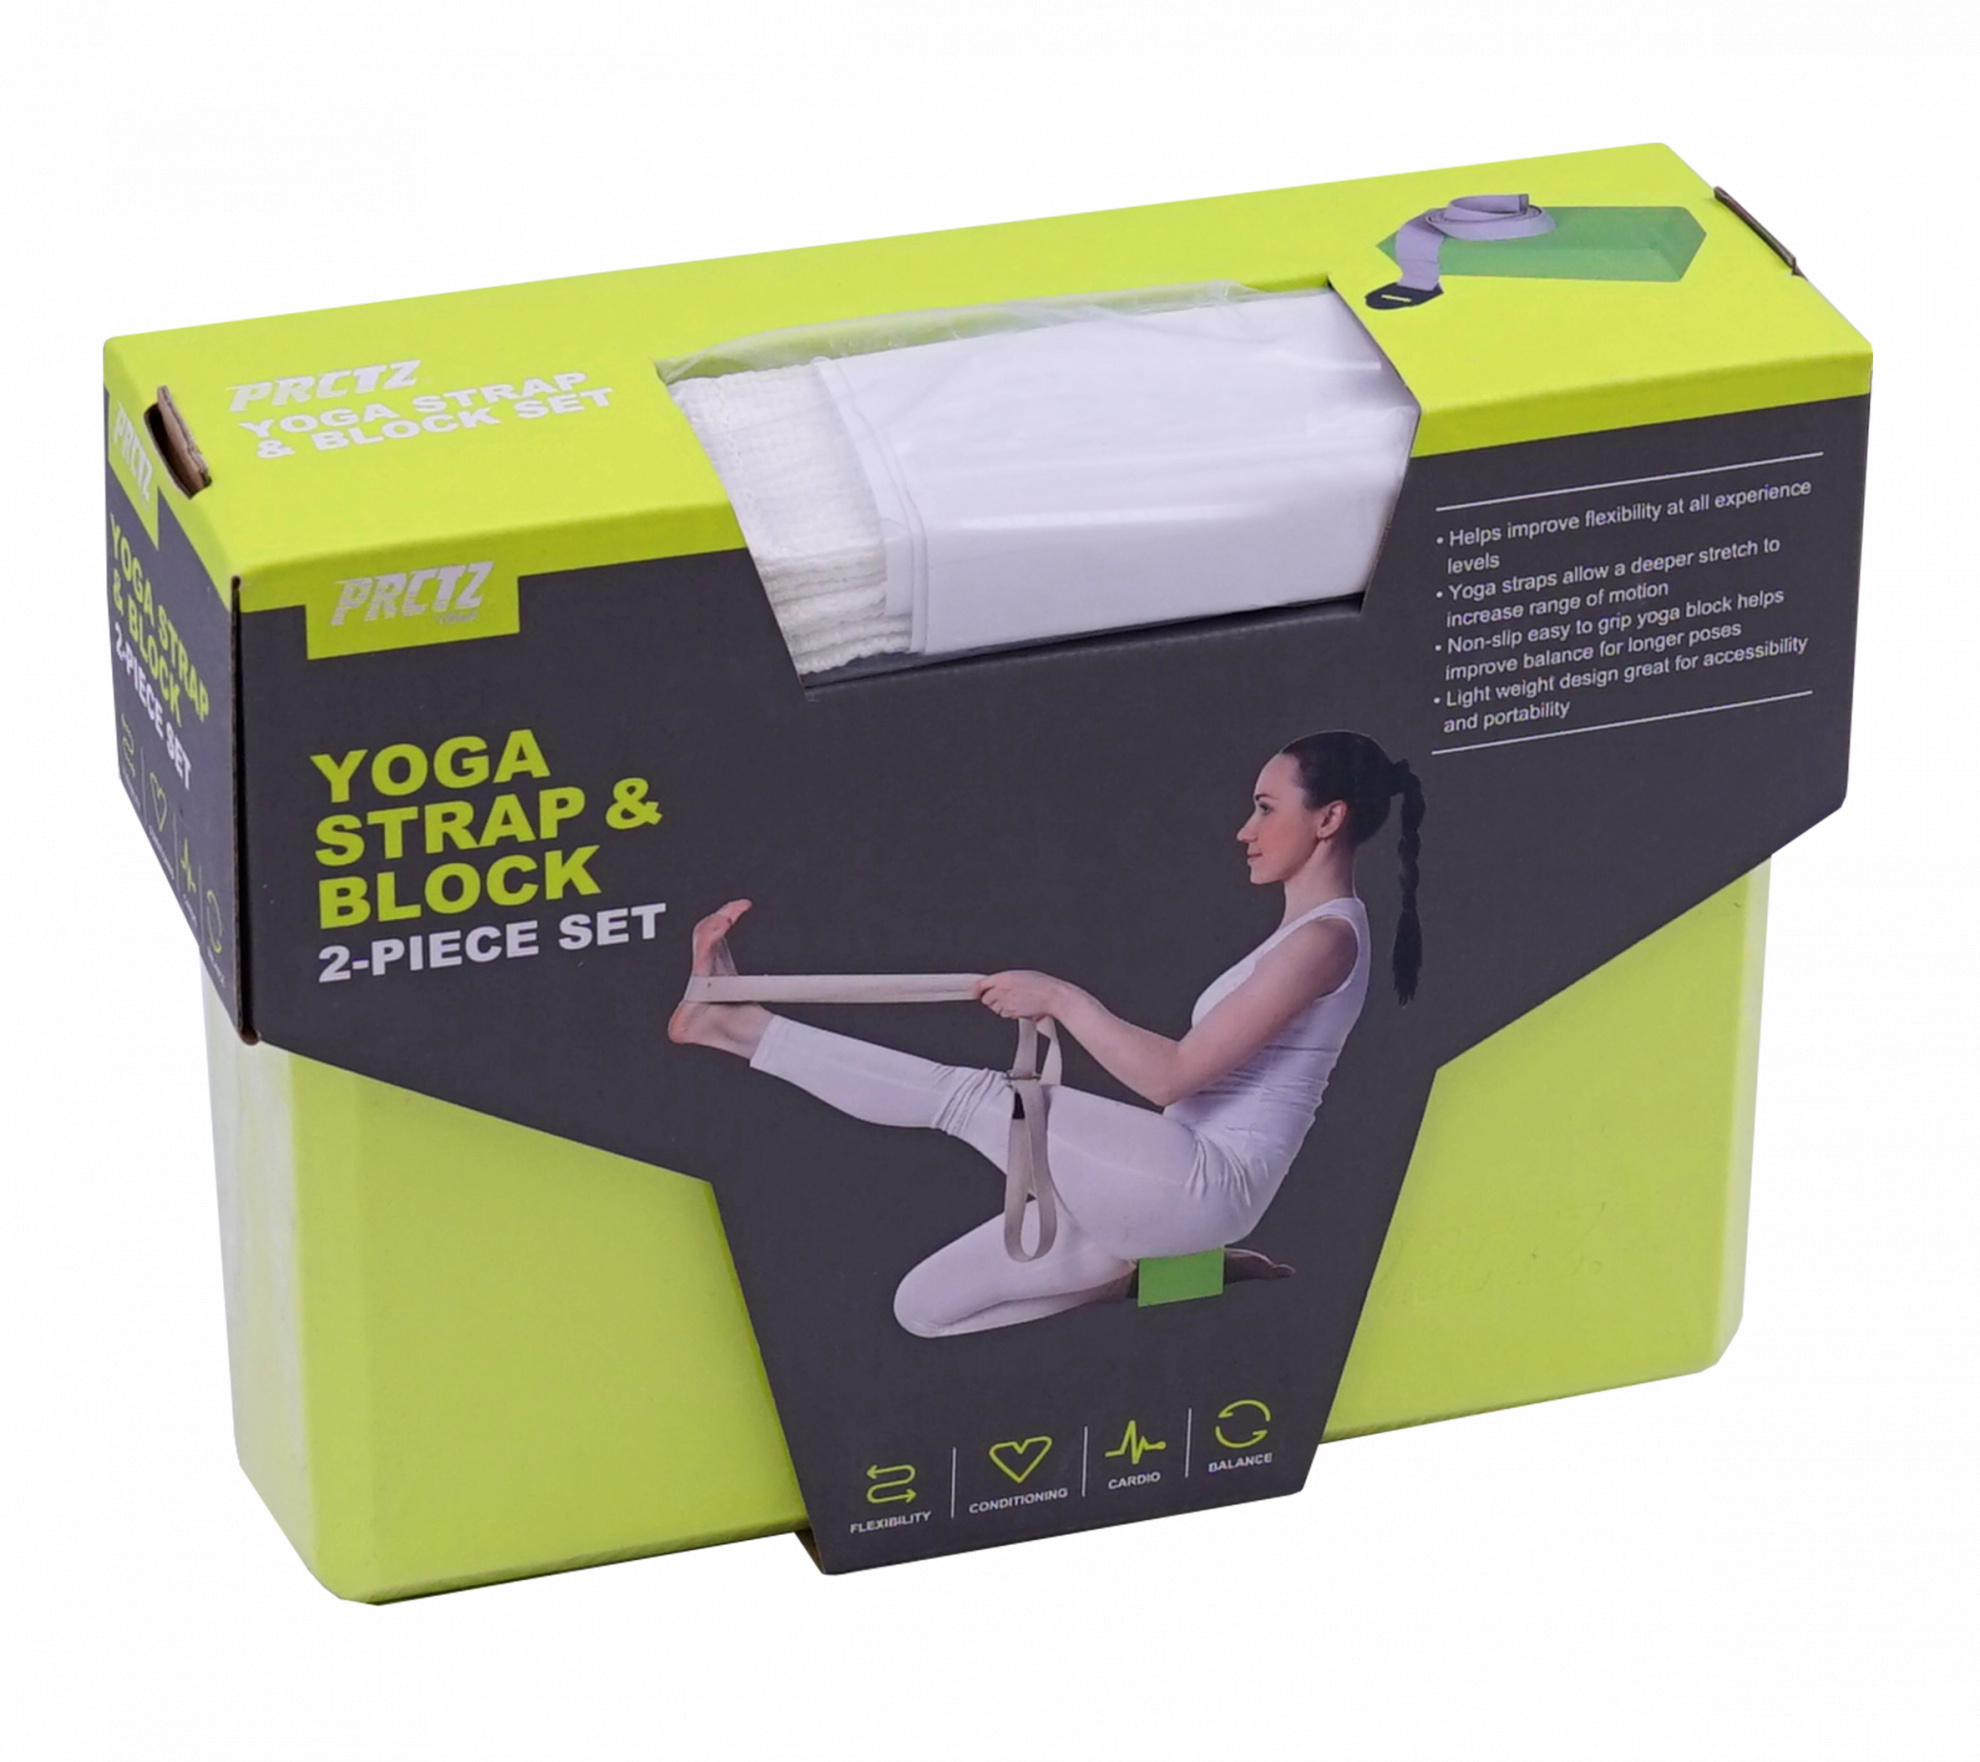 Блок для йоги PRCTZ в комплекте с ремнем Yoga Star&Block 2-piece Set